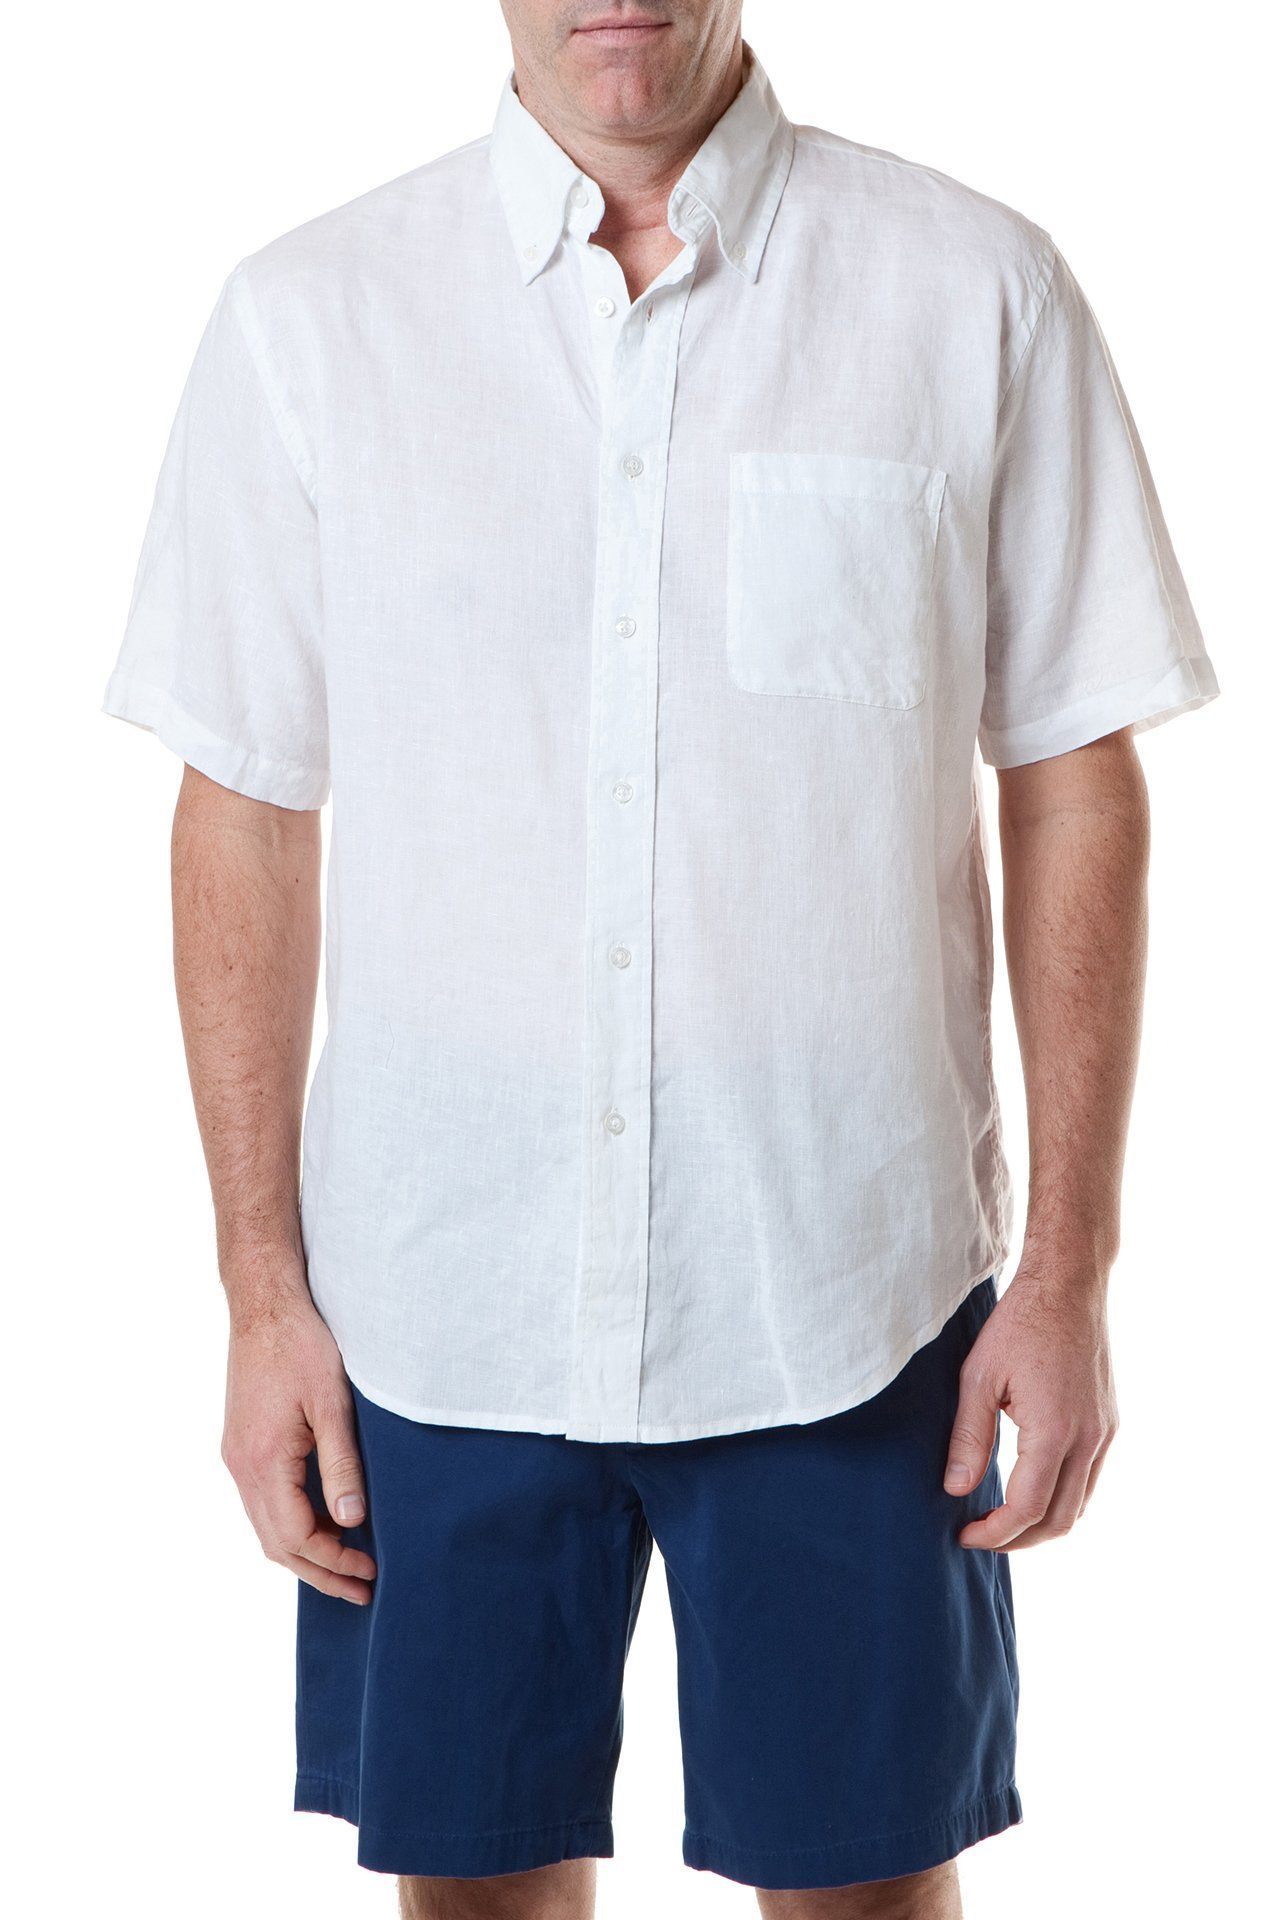 Chase Mens Short Sleeve Buttondown Shirt White Linen – Castaway Nantucket  Island